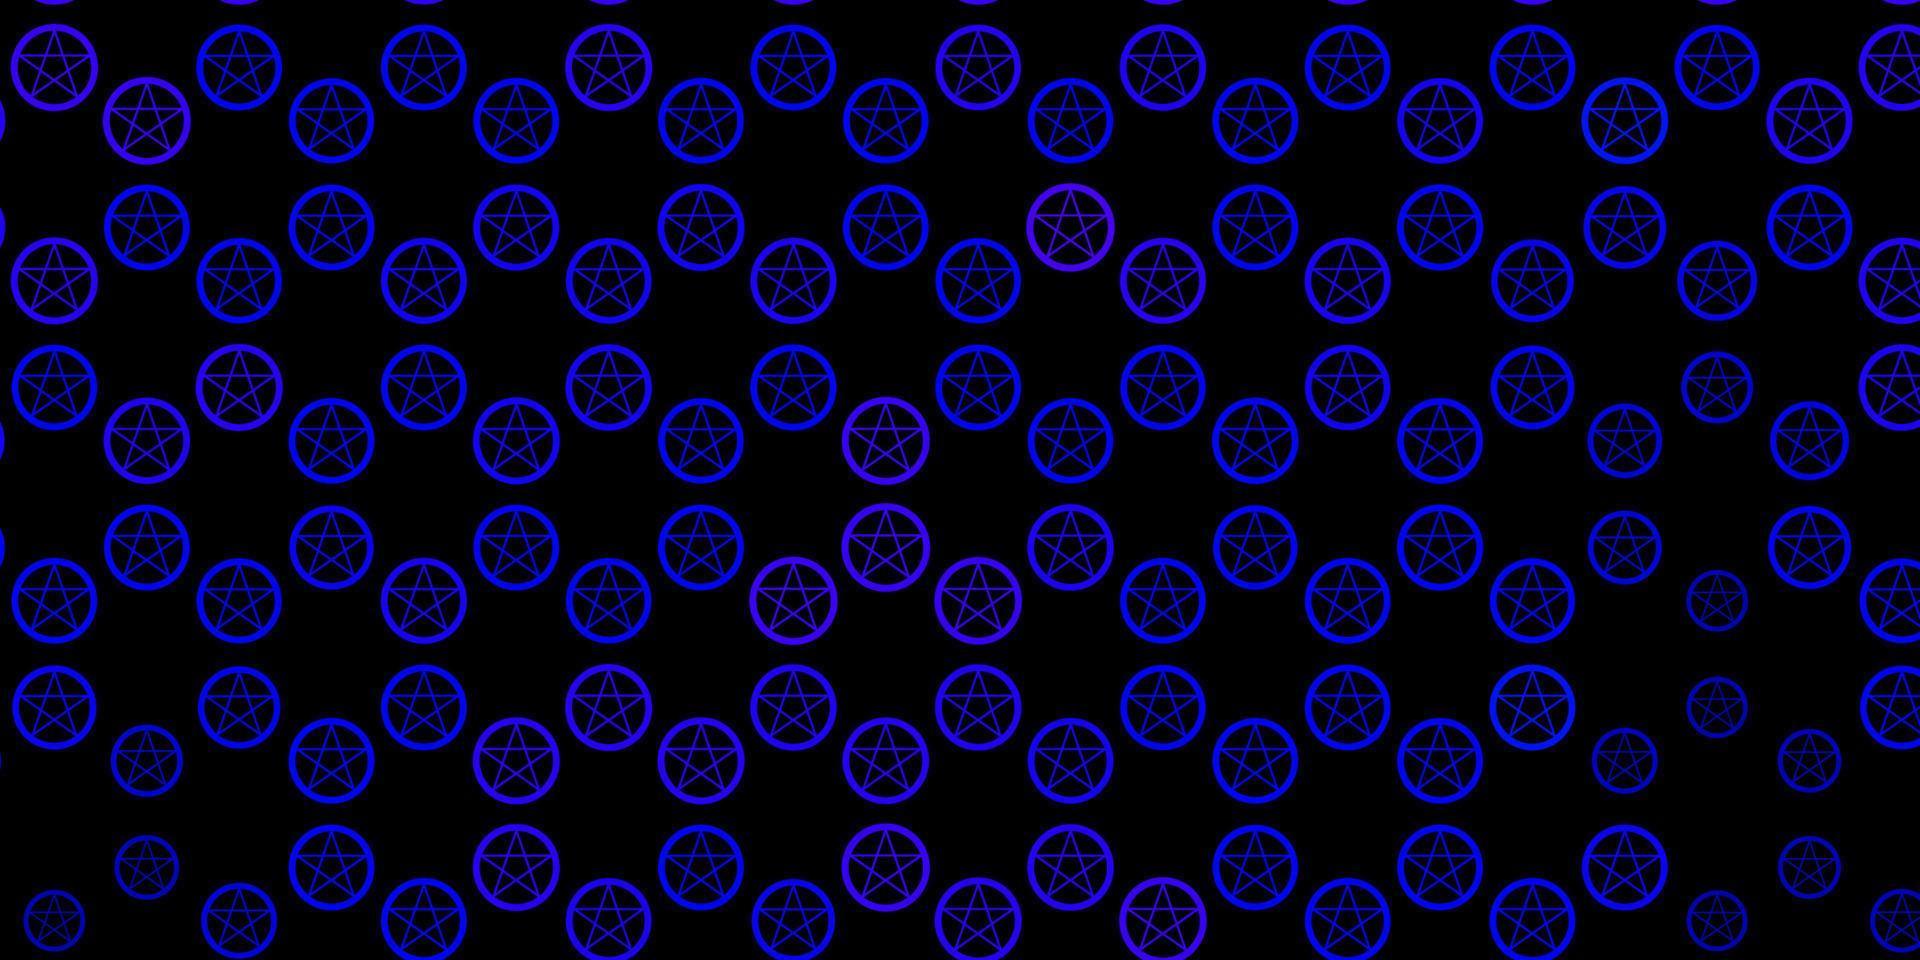 padrão de vetor azul escuro com elementos mágicos.